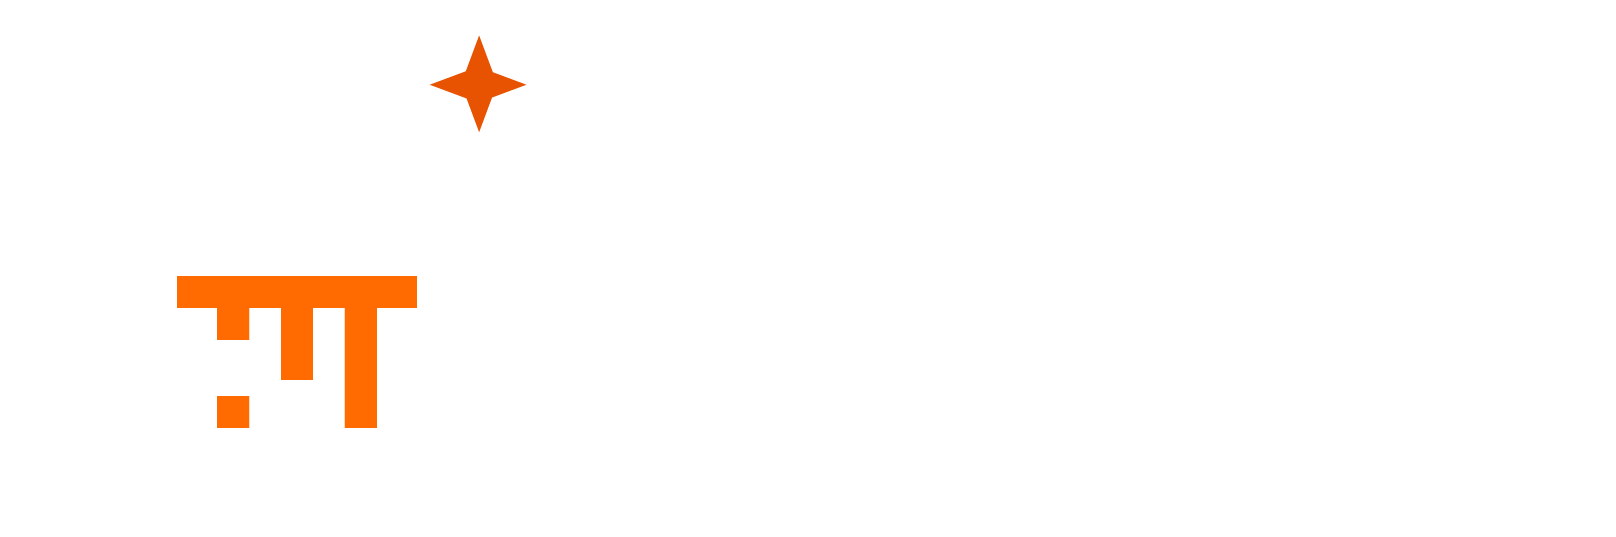 Cellebrite_Physical_Analyzer_Logo